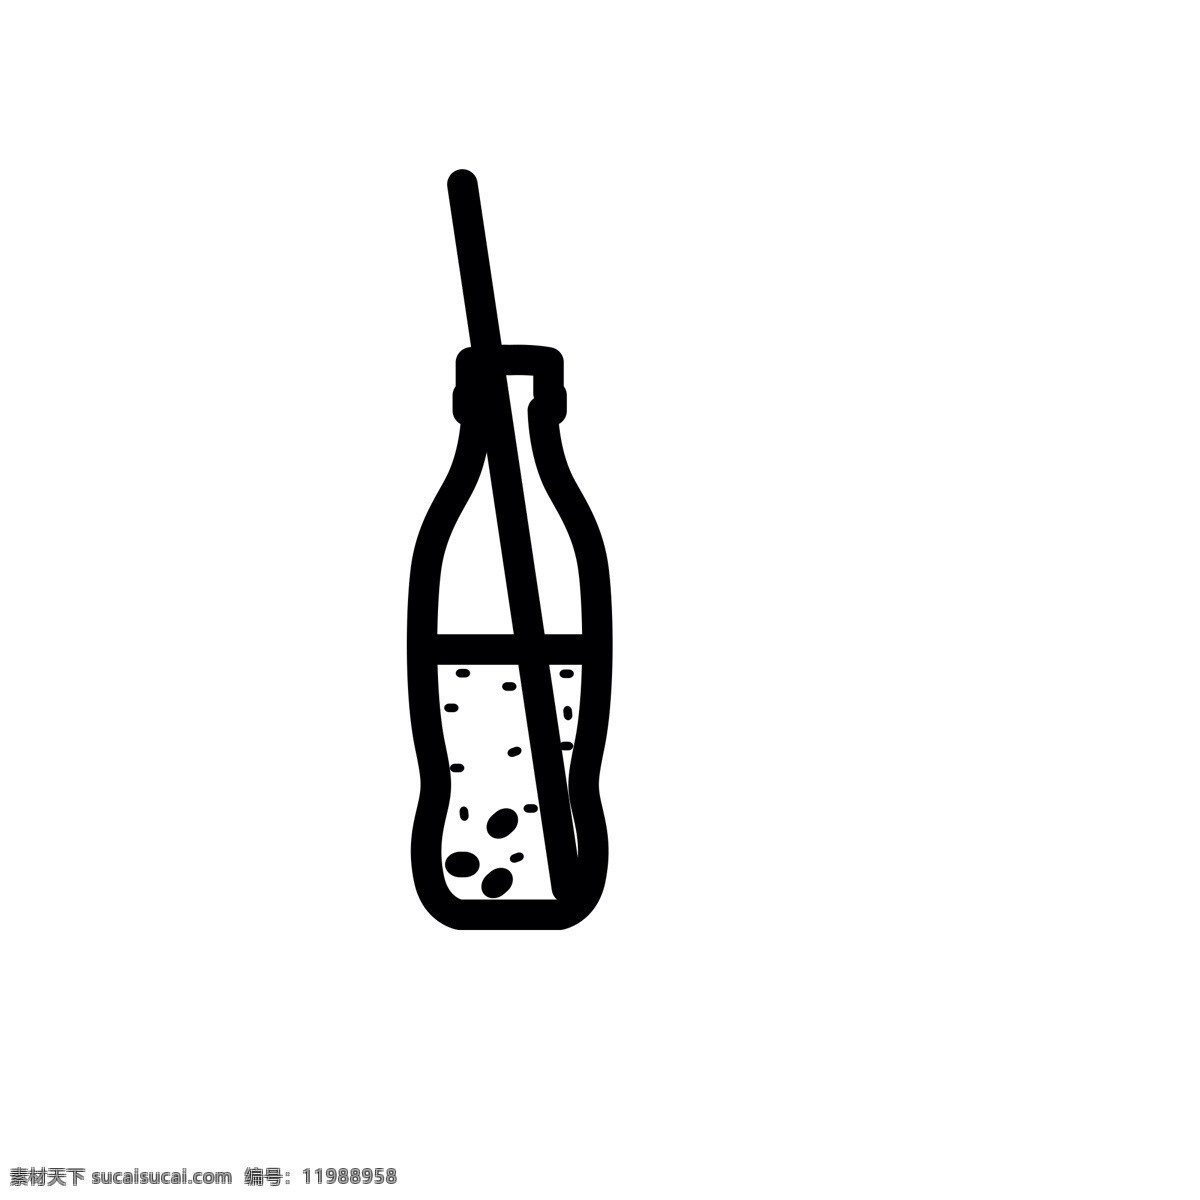 卡通 果汁饮料 汽水 吸管饮料 扁平化ui ui图标 手机图标 游戏ui 界面ui 网页ui h5图标